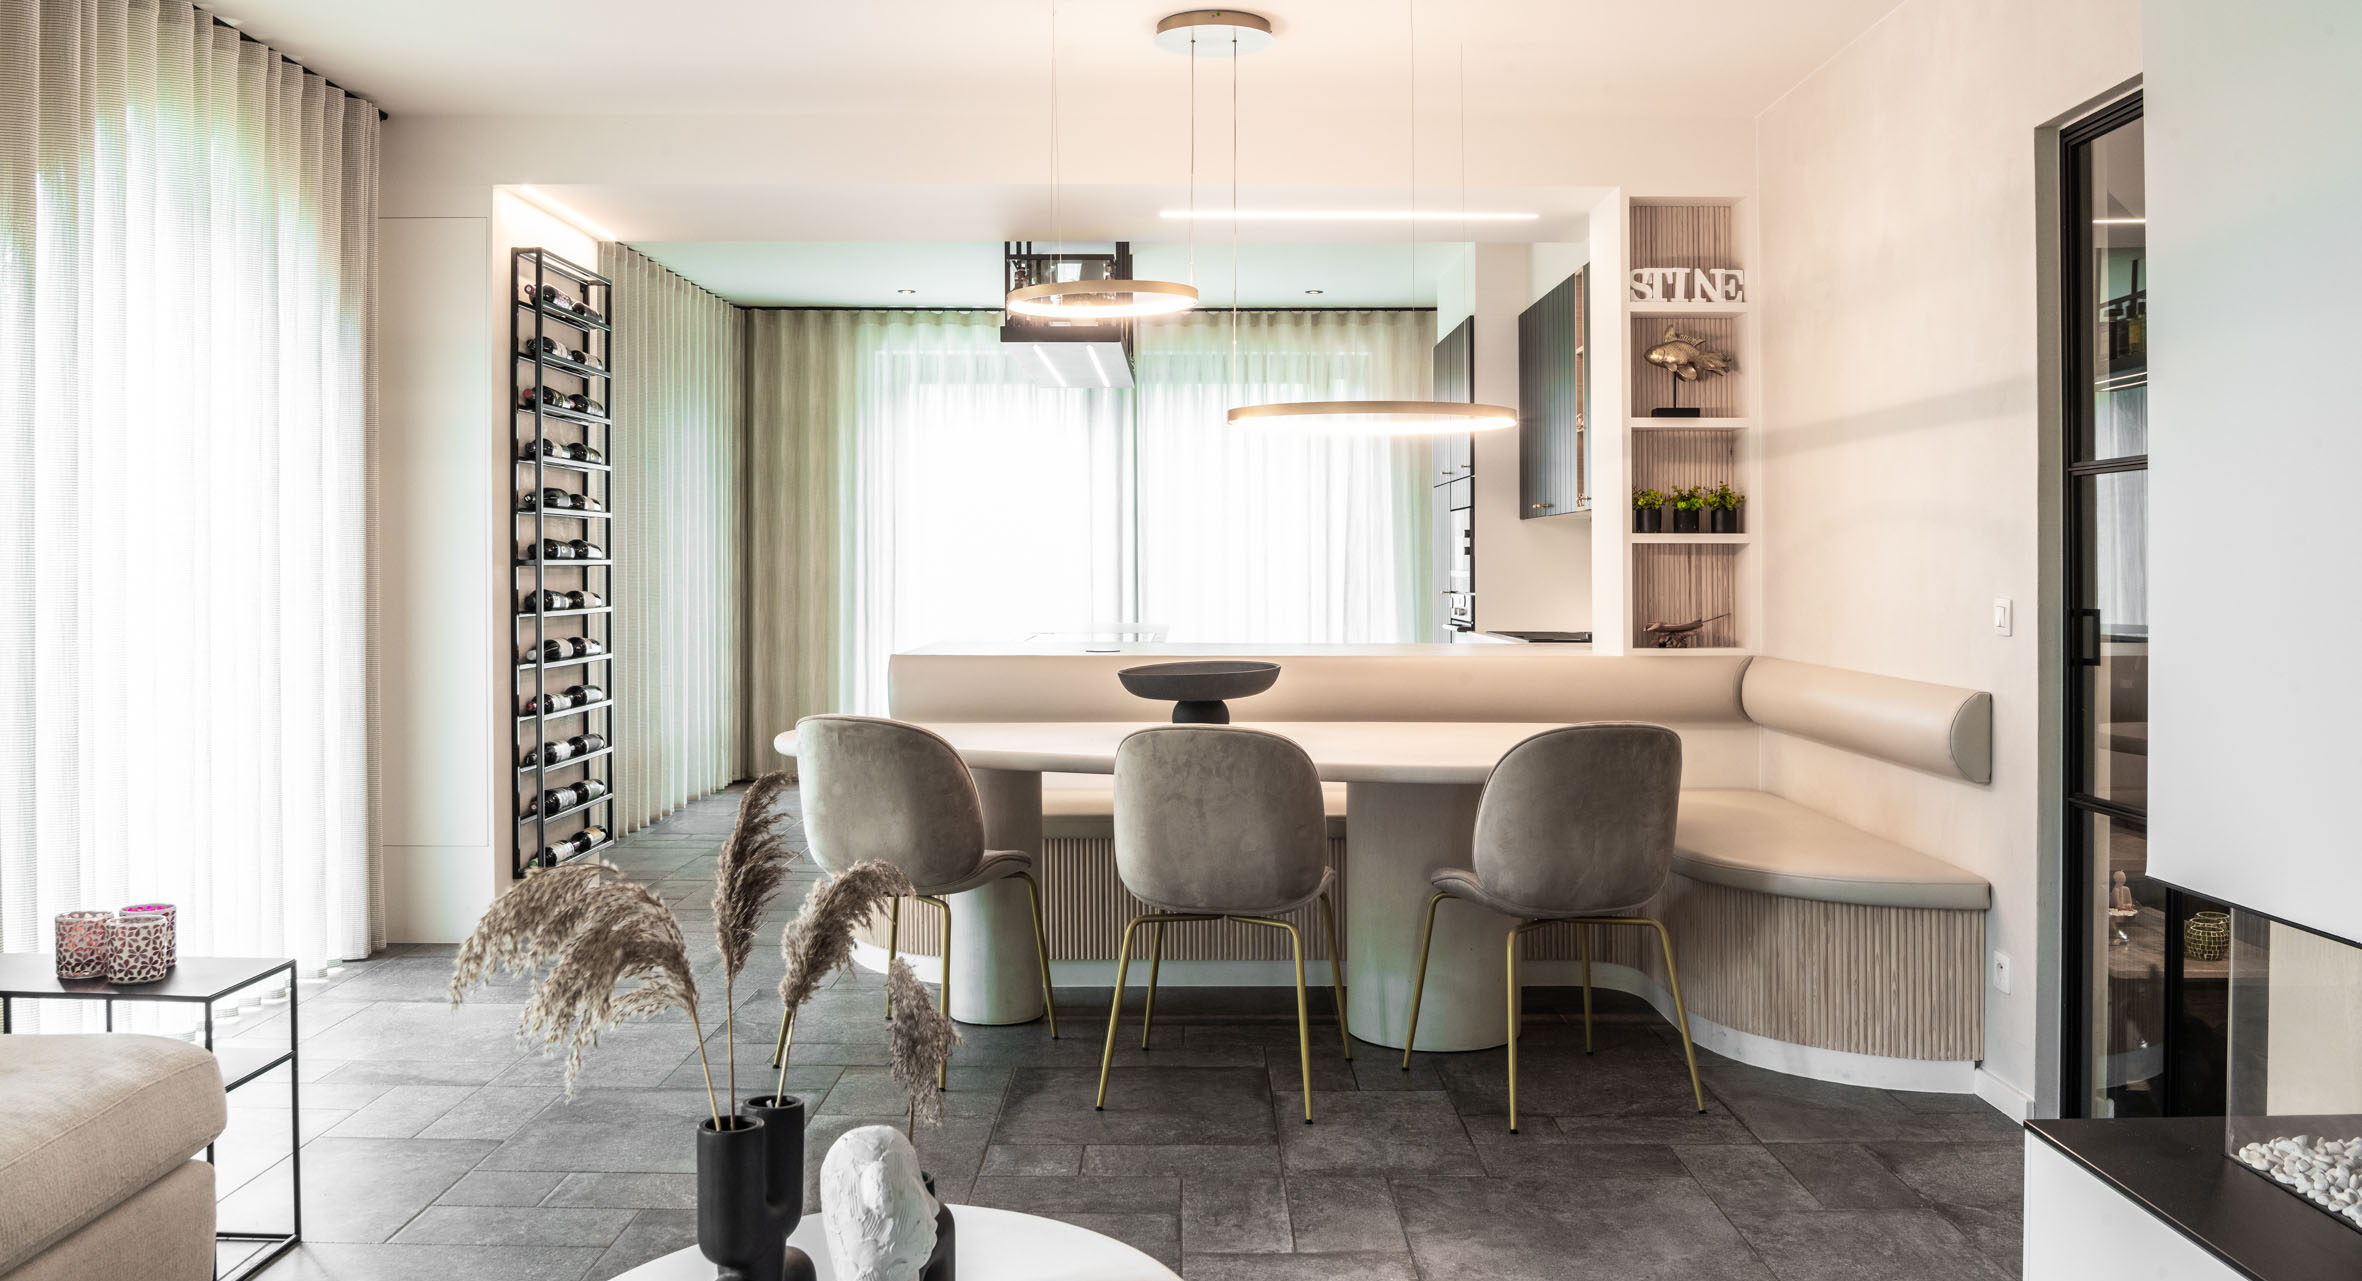 Evolution Design keukens-Totaalprojecten-Totaalproject living-Totaalprojecten keukens-Architecten-Moderne living-verbouwing-verbouwing keuken-verbouwing living-moderne keuken-Witte keuken-Marmer-Design keukens op maat-Interieurwinkel-Hasselt-Ibiza vibe-gezellige living-mortex tafel